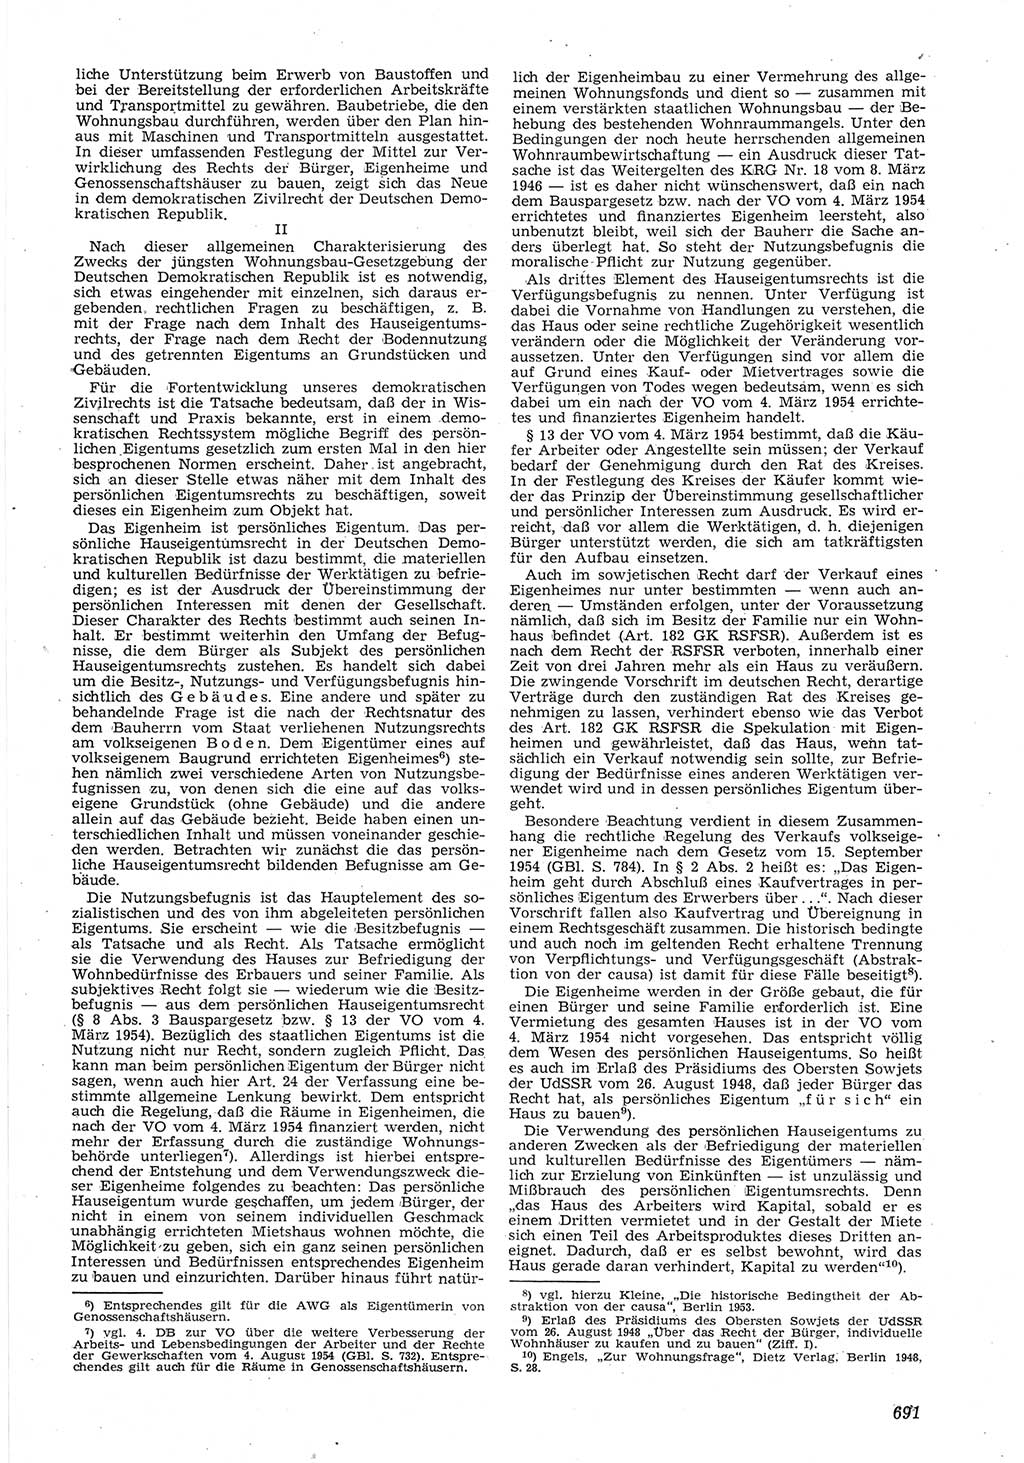 Neue Justiz (NJ), Zeitschrift für Recht und Rechtswissenschaft [Deutsche Demokratische Republik (DDR)], 8. Jahrgang 1954, Seite 691 (NJ DDR 1954, S. 691)